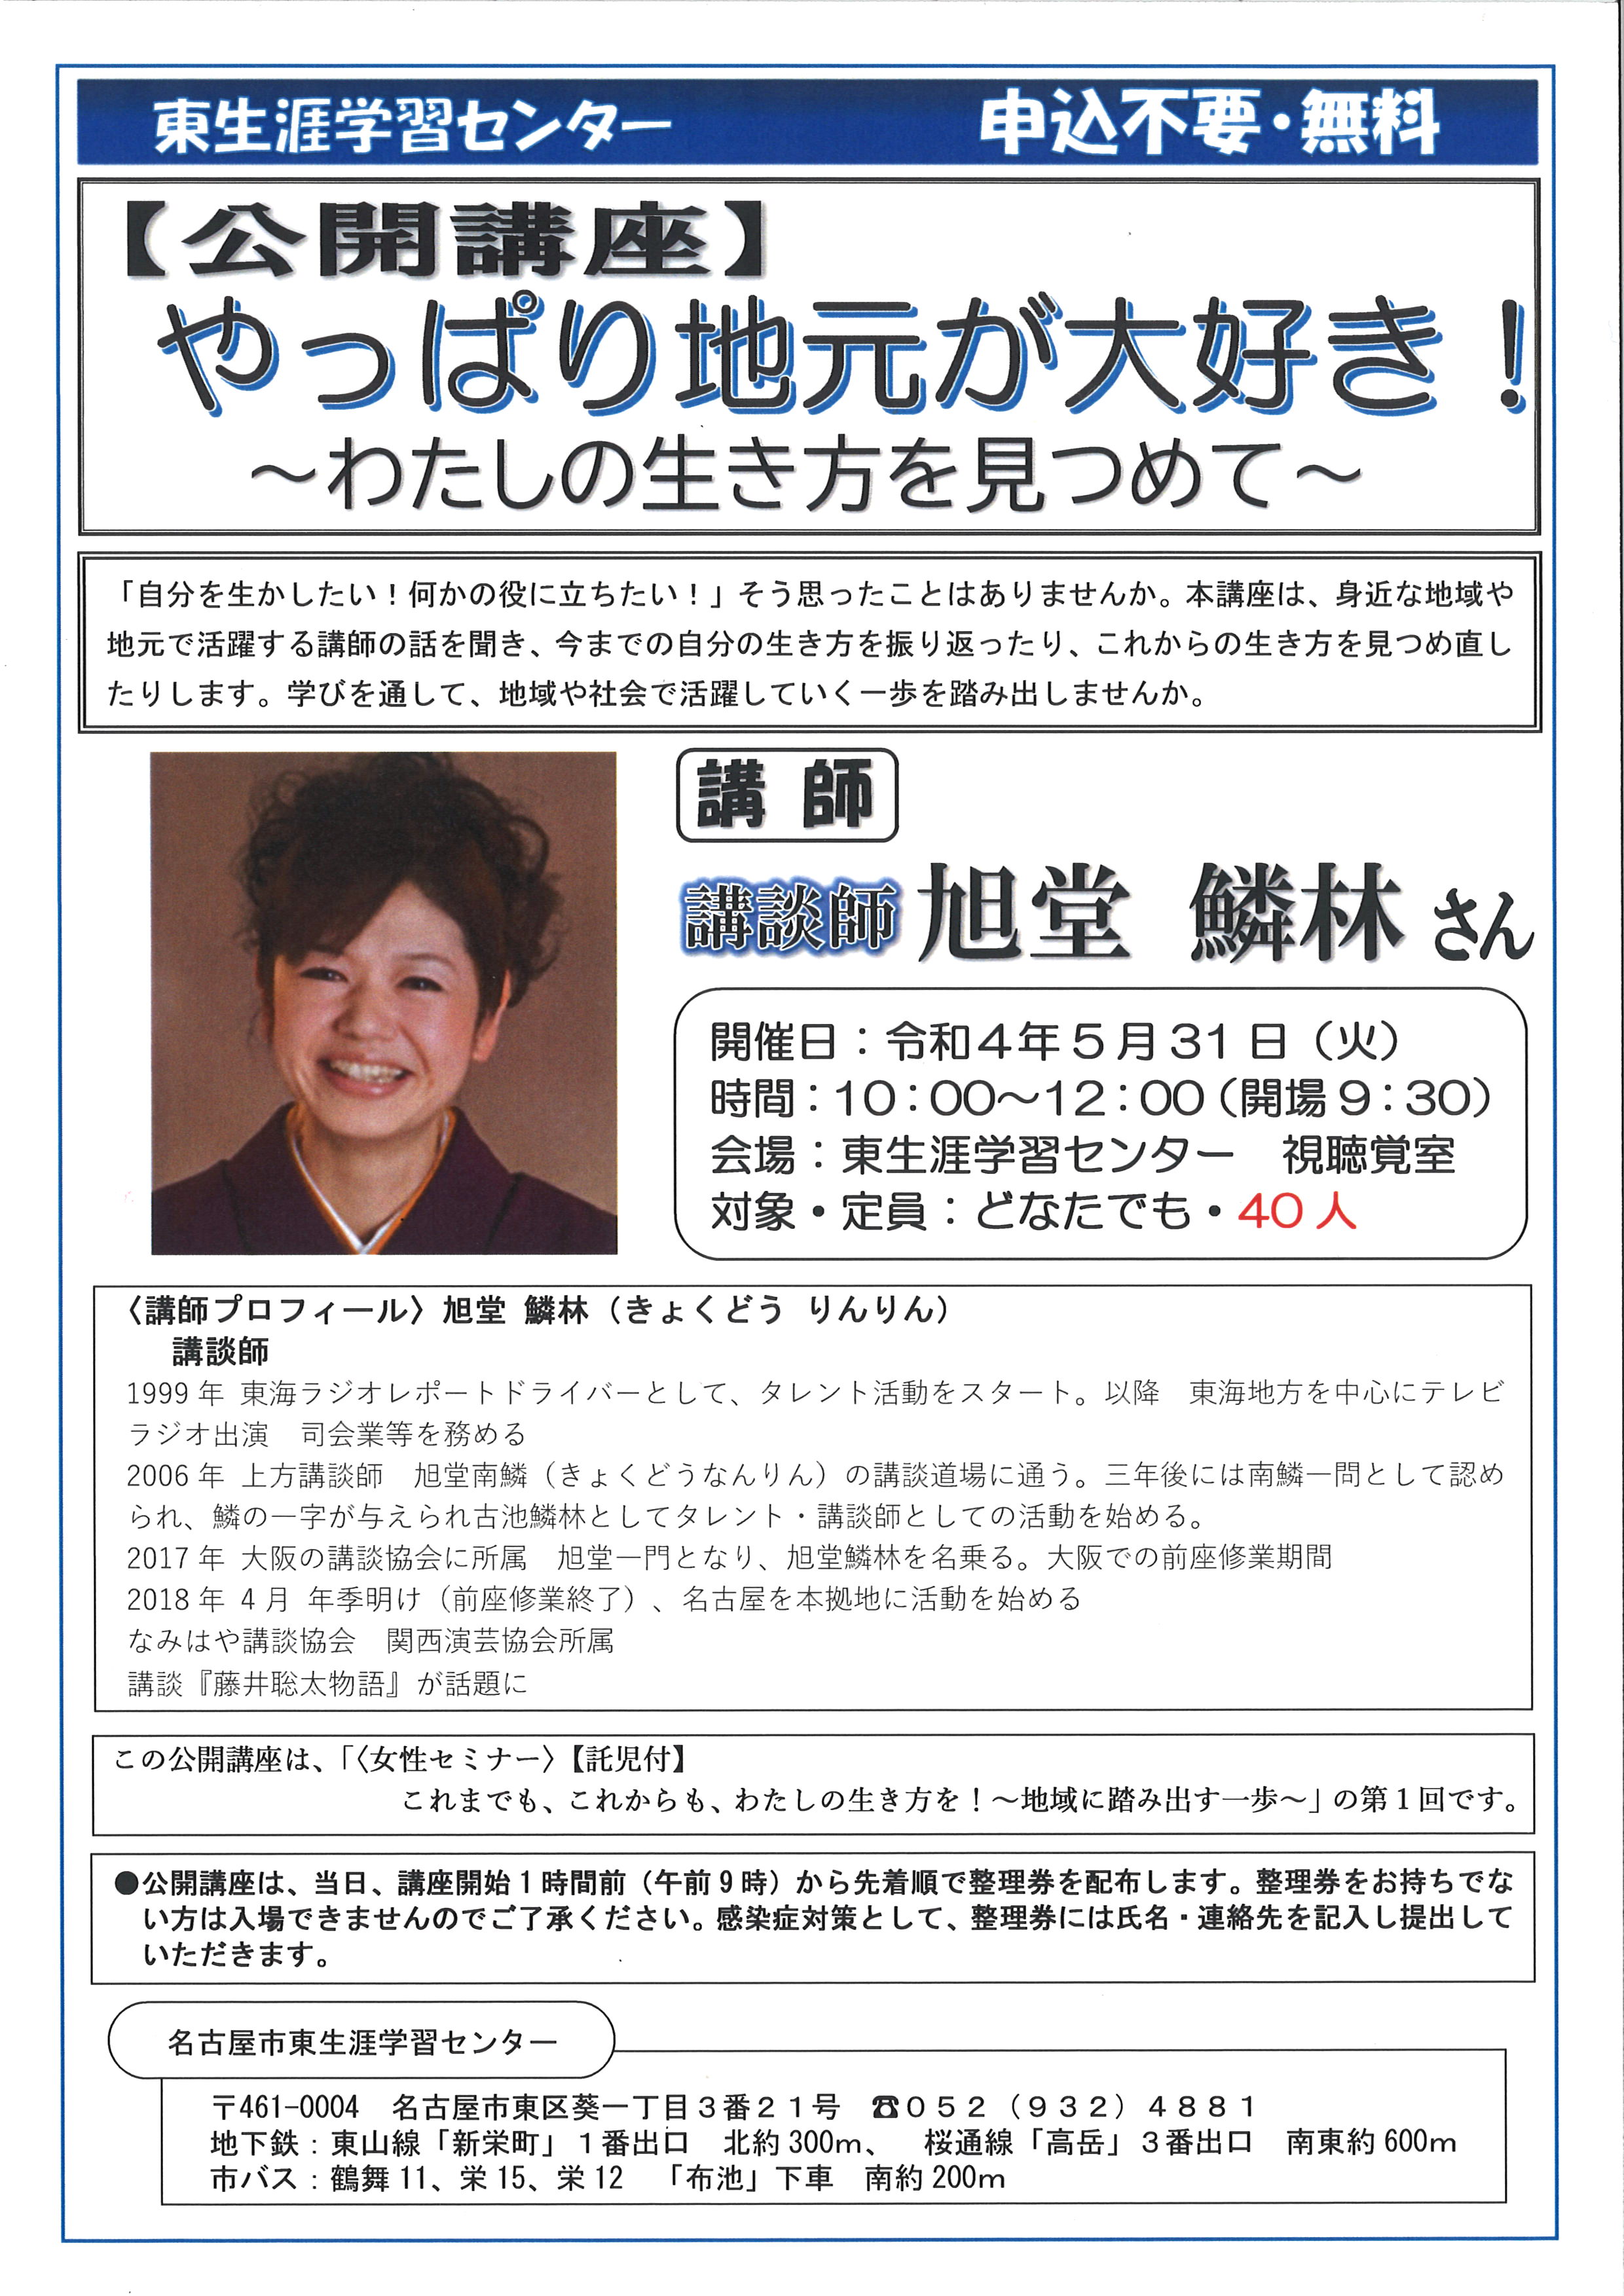 お知らせ |名古屋市東生涯学習センター